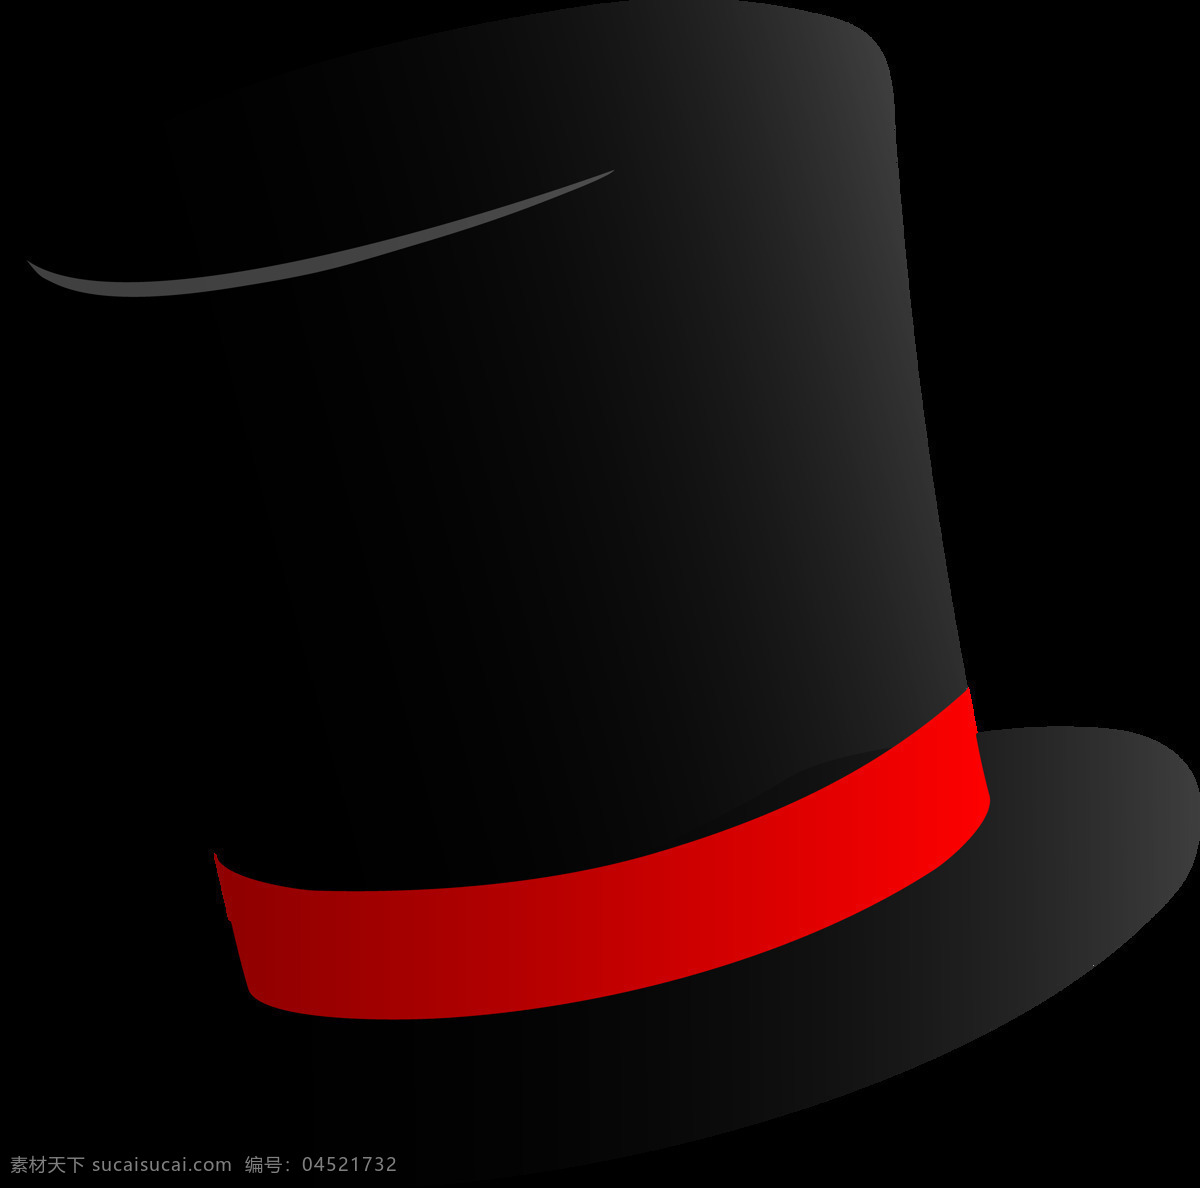 红色 条纹 黑 礼帽 免 抠 透明 图 层 卡通帽子 礼服帽子图片 帽子图片素材 男士帽子图片 帽子图片大全 遮阳礼帽图片 遮阳帽 夏季帽子 冬季帽子 男士帽子